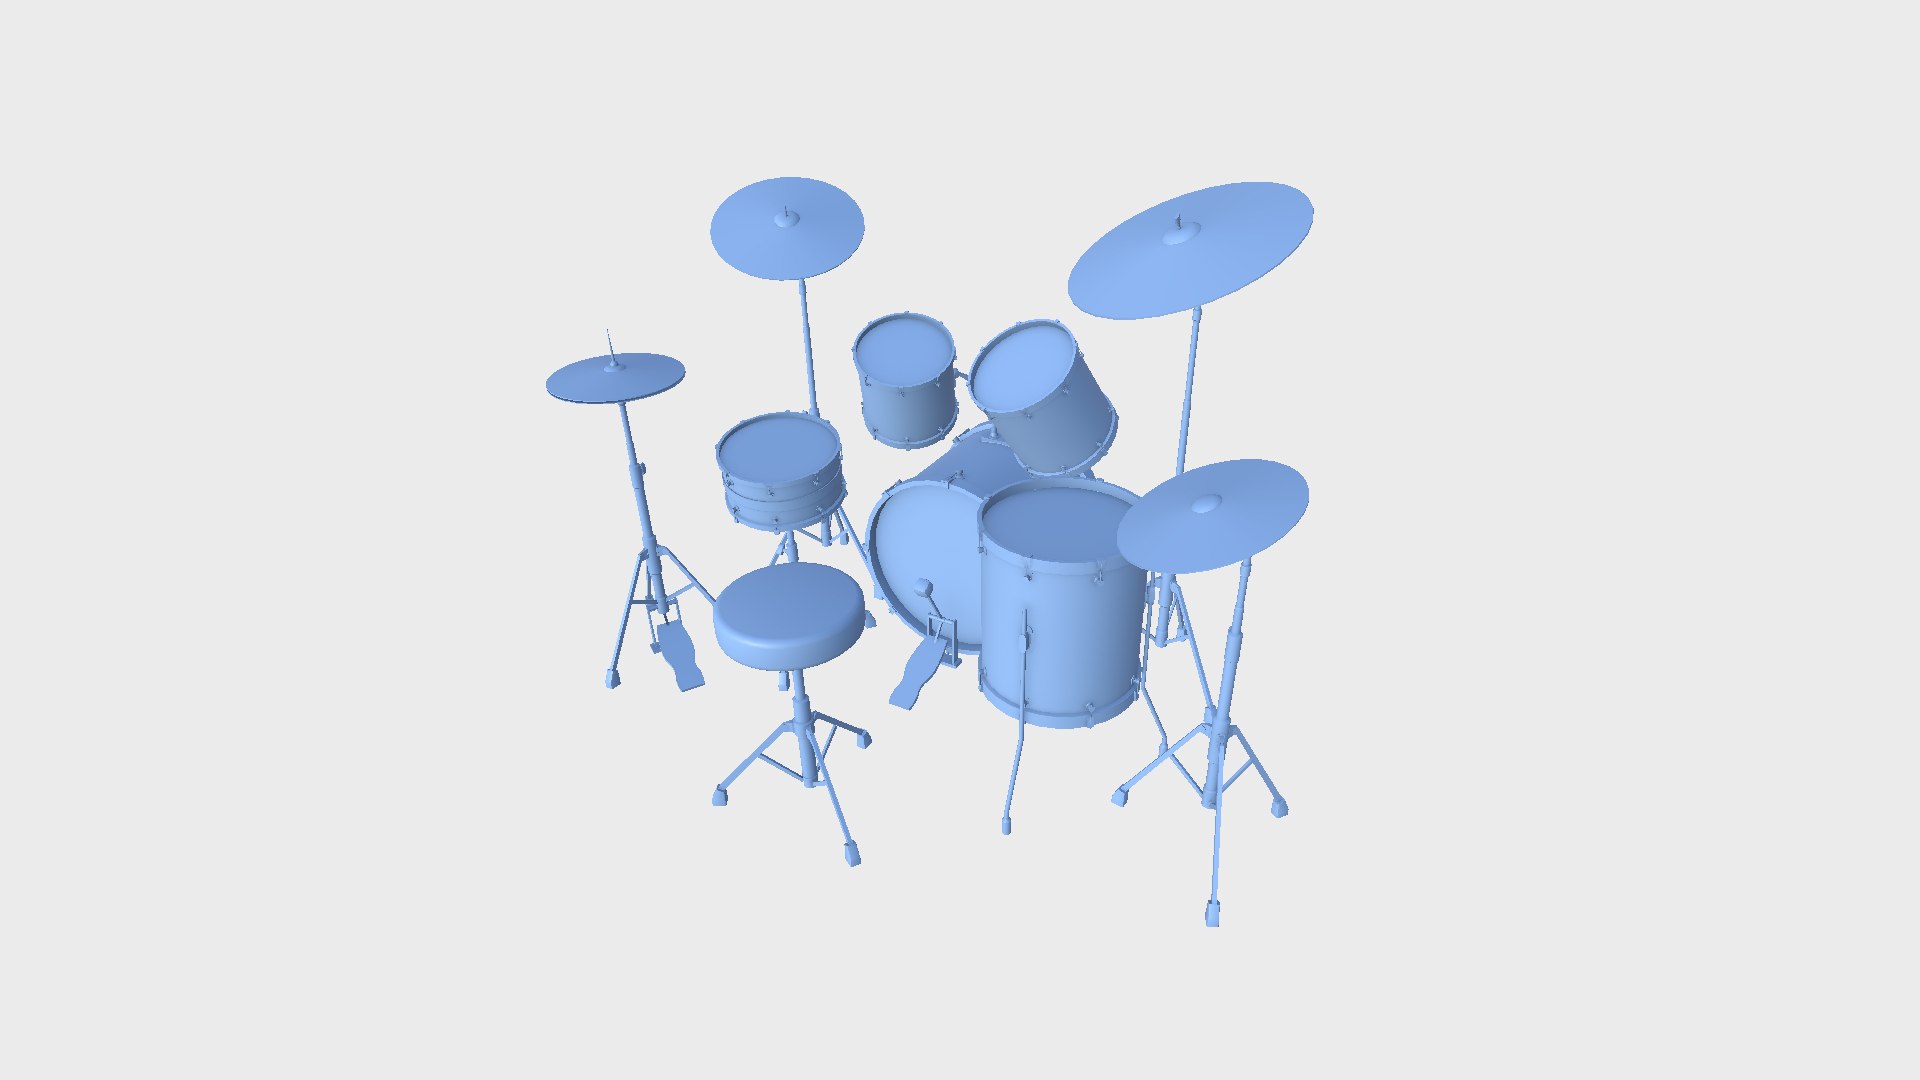 Drum 06 White - Drumming Music Instrument Design 3D Model - TurboSquid ...